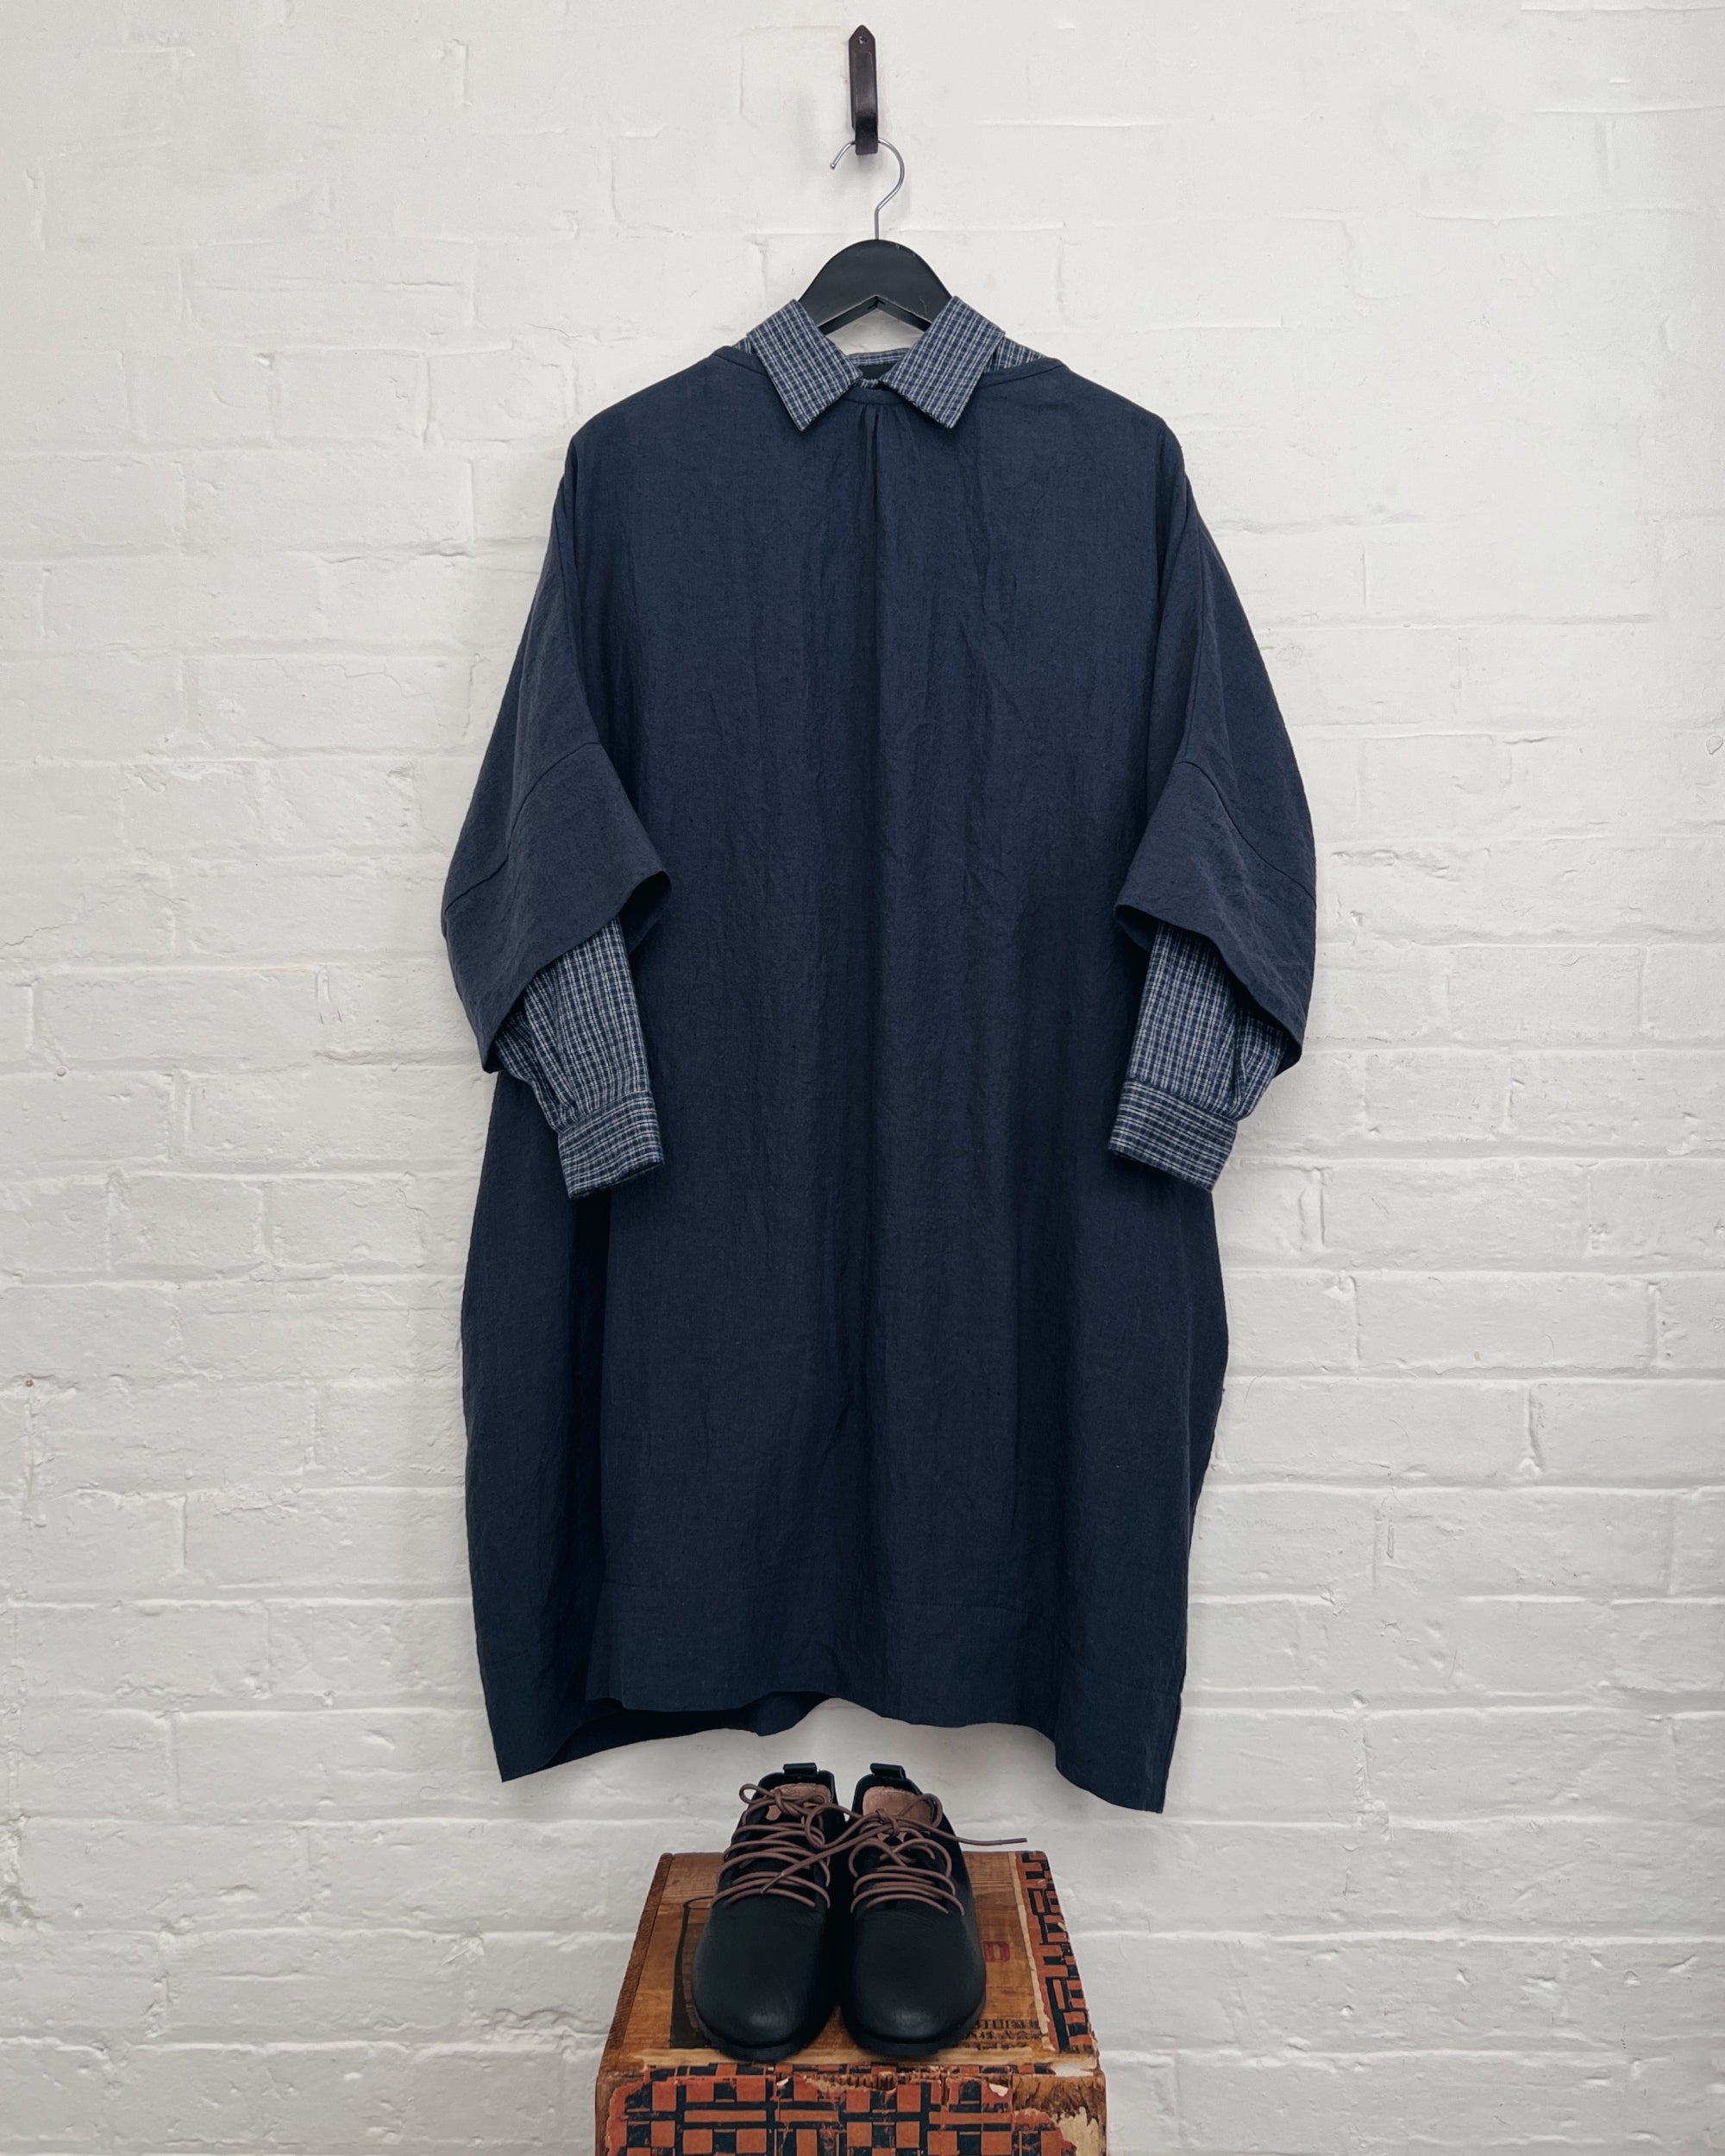 LJ struthers : bluestone linen quadro dress